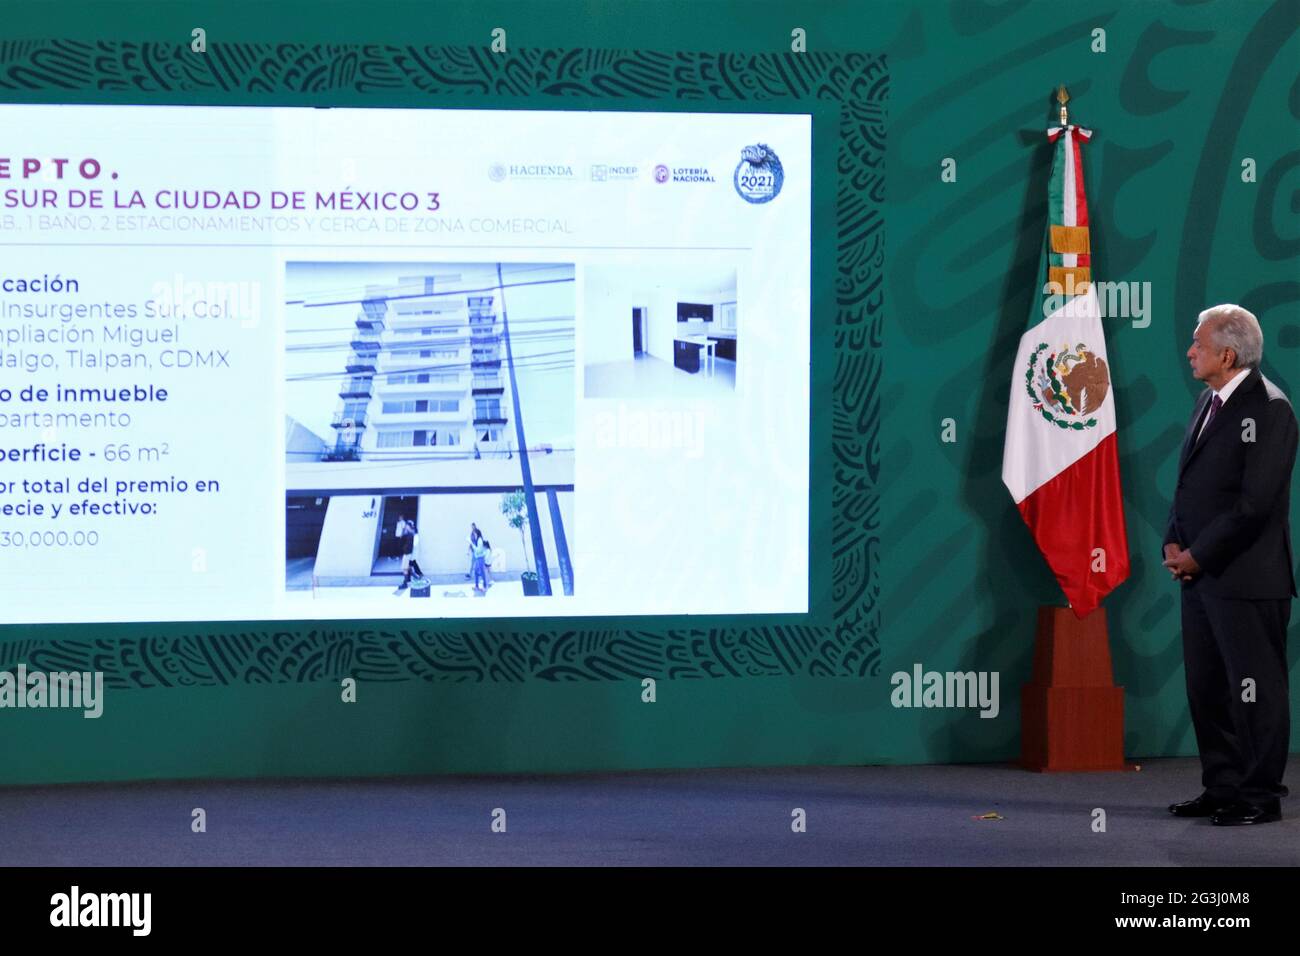 MEXICO, MEXIQUE - JUIN 16: Le Président du Mexique, Andres Manuel Lopez Obrador, se présente tout en répondant aux questions des médias lors de son exposé quotidien au Palais national le 16 juin 2021 à Mexico, Mexique. Banque D'Images